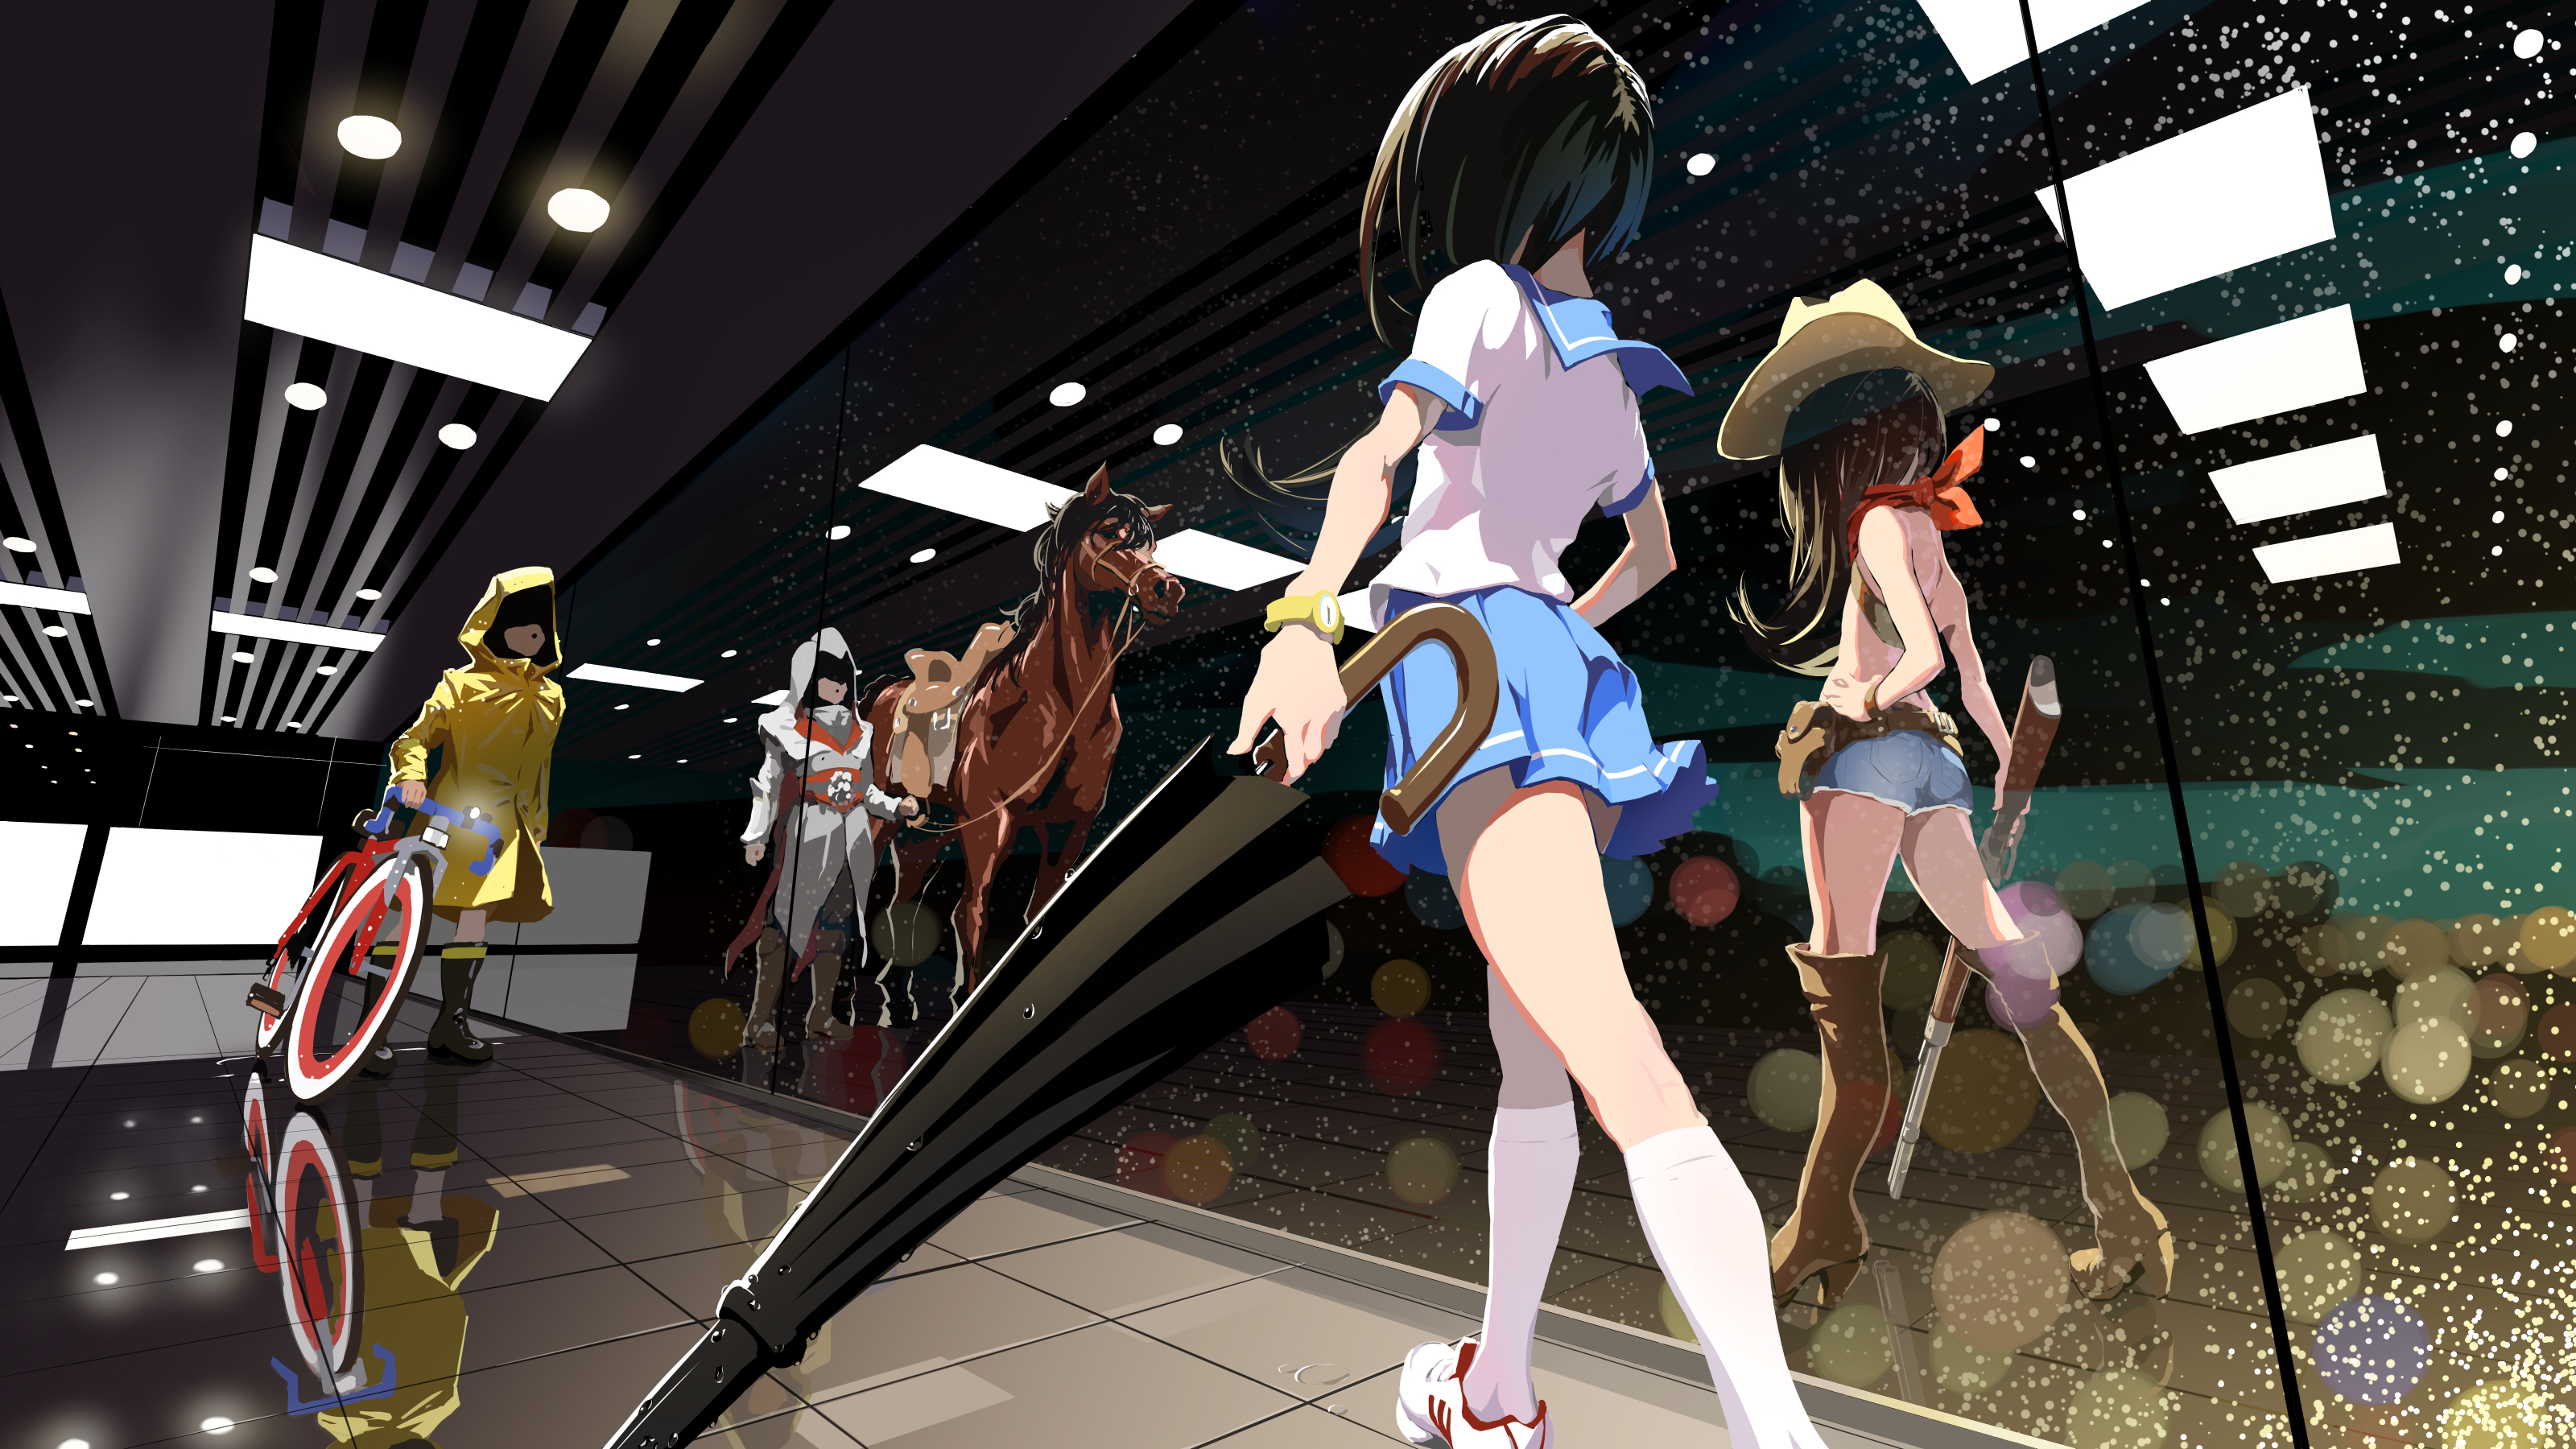 Anime Anime Girls Mirror Mirrored Sailor Uniform Umbrella Dark Hair Long Hair Horse Gun Long Boots S 3200x1800